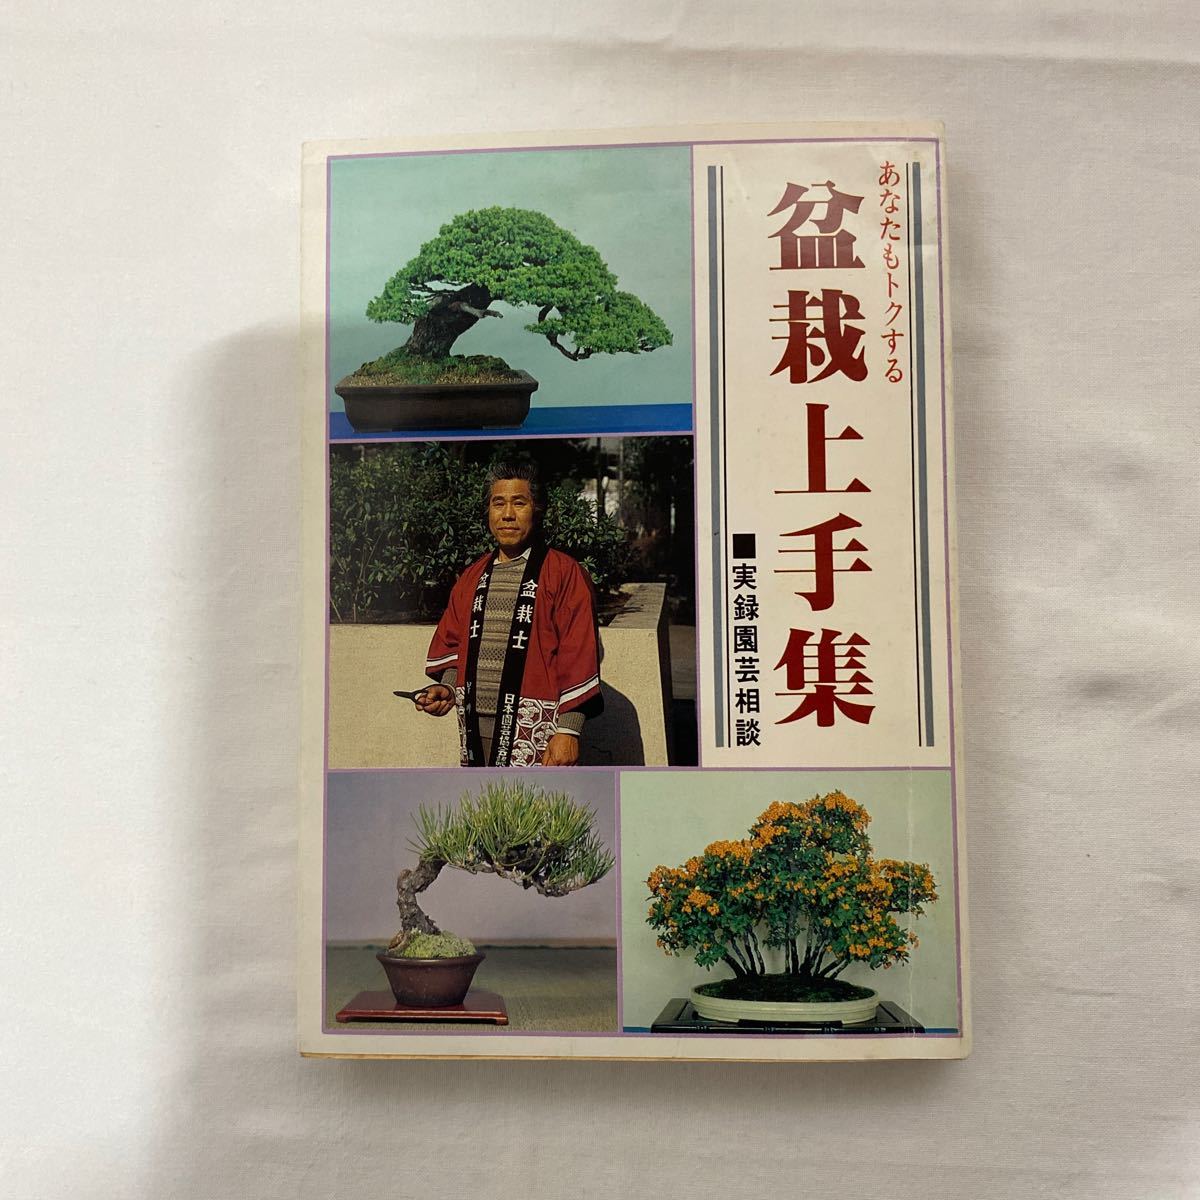  вы .tok делать бонсай хорошо сделанный сборник старая книга хроника садоводство консультации Япония садоводство ассоциация 